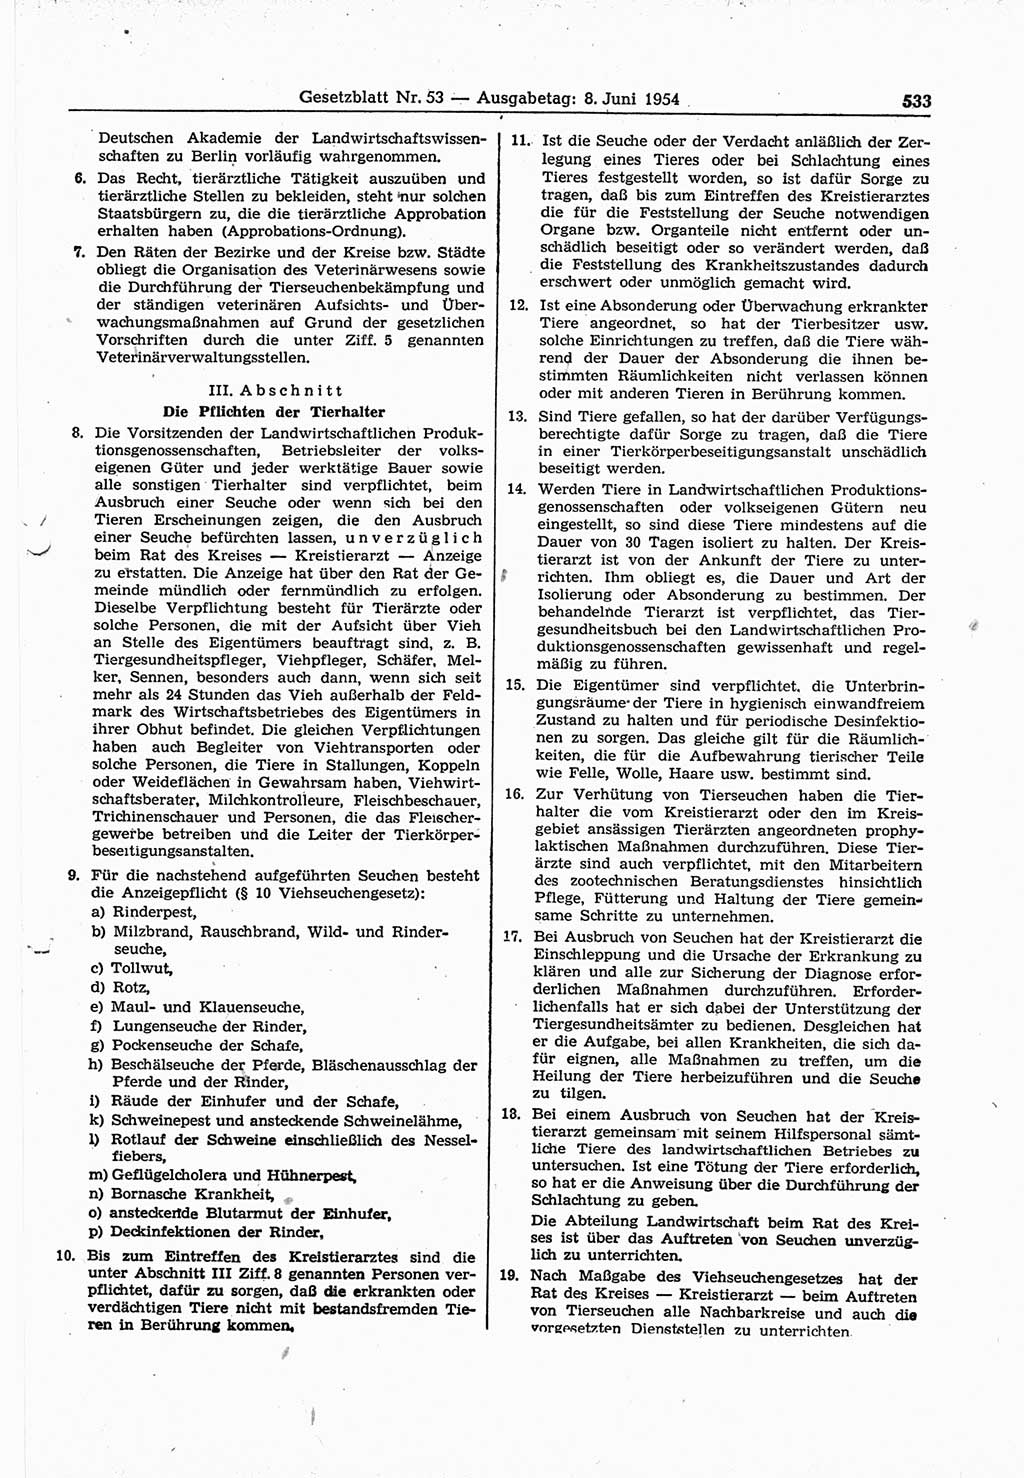 Gesetzblatt (GBl.) der Deutschen Demokratischen Republik (DDR) 1954, Seite 533 (GBl. DDR 1954, S. 533)